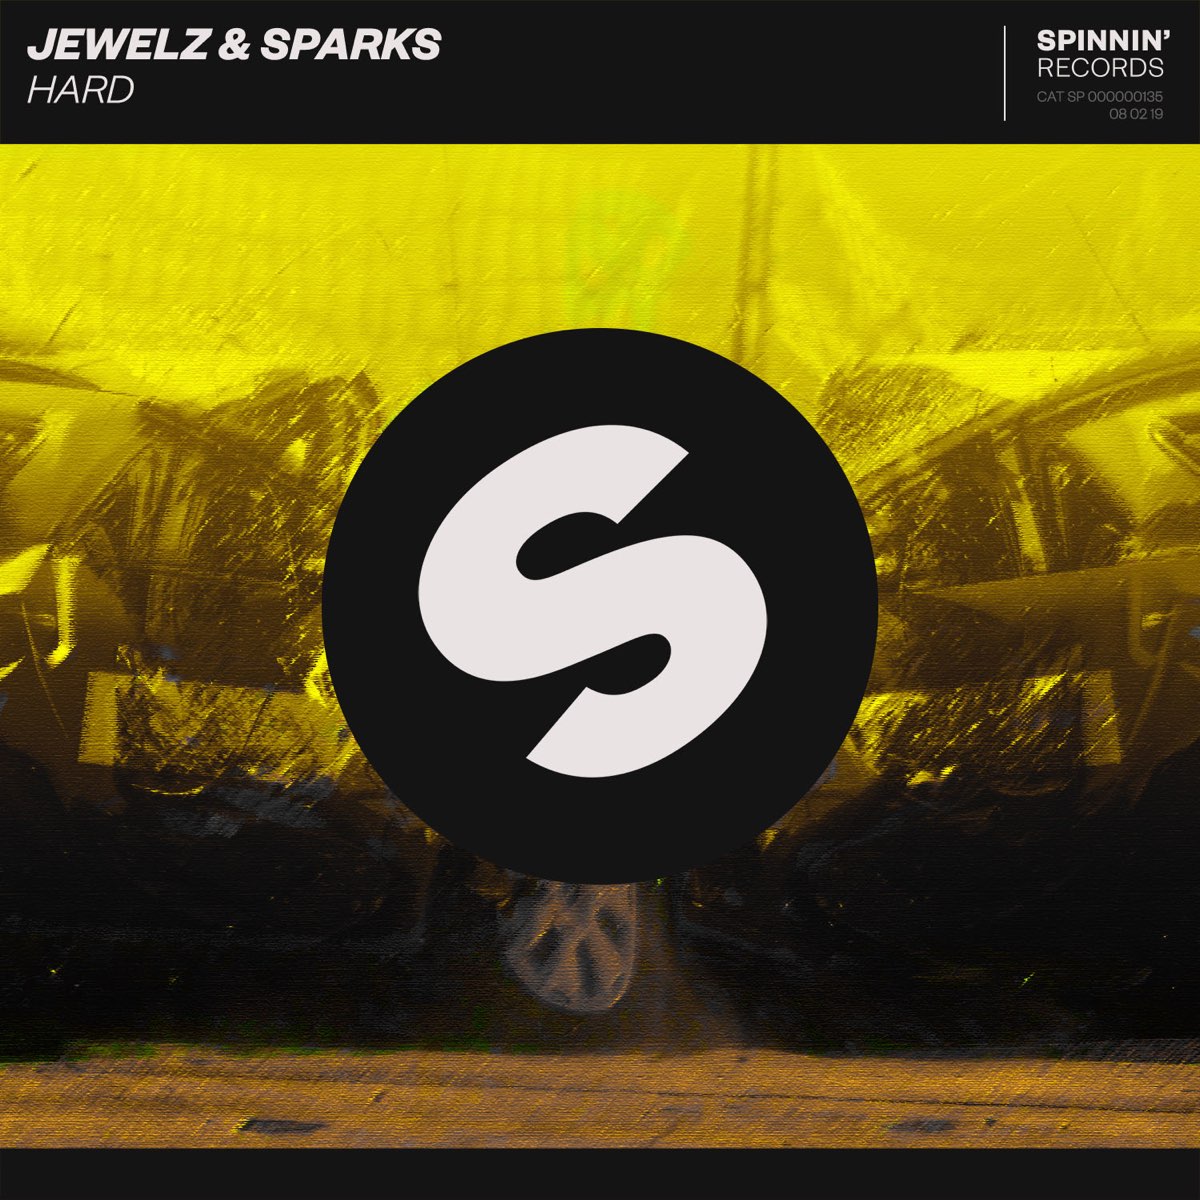 Sparking hard. Jewelz & Sparks. Django Jewelz & Sparks. Jewelz &amp; Sparks hard. Группа Sparks альбомы.